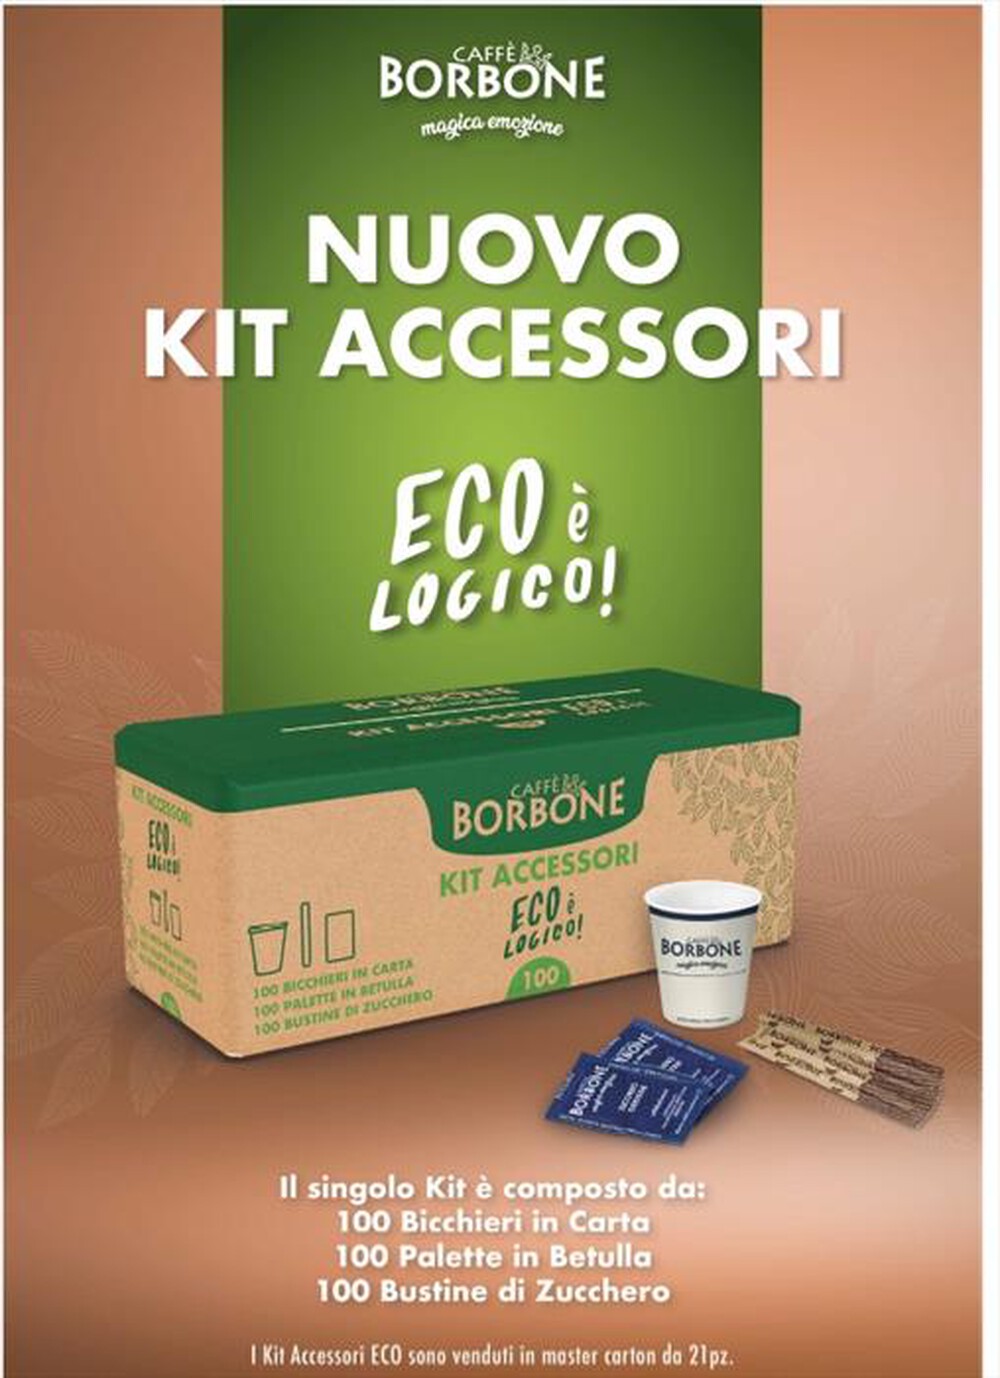 "CAFFE BORBONE - Kit accessori EcoLogico"